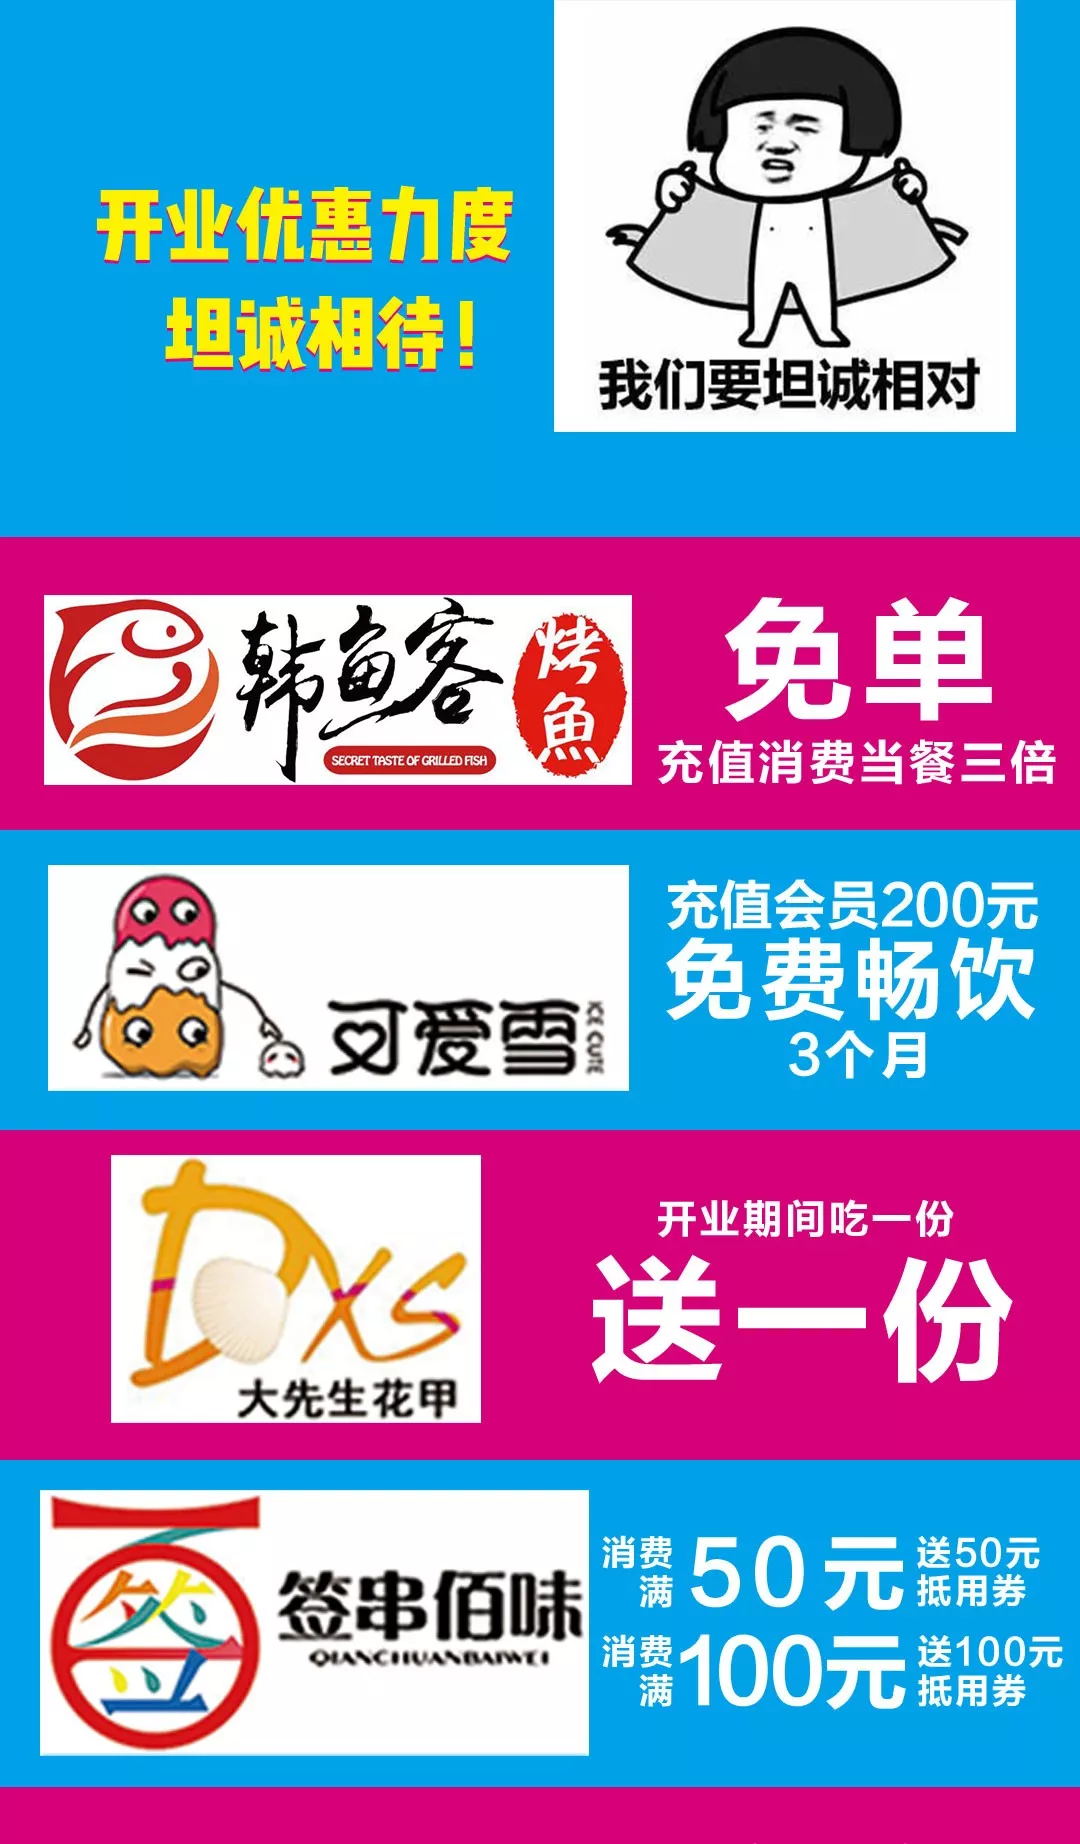 15_看图王.web.jpg